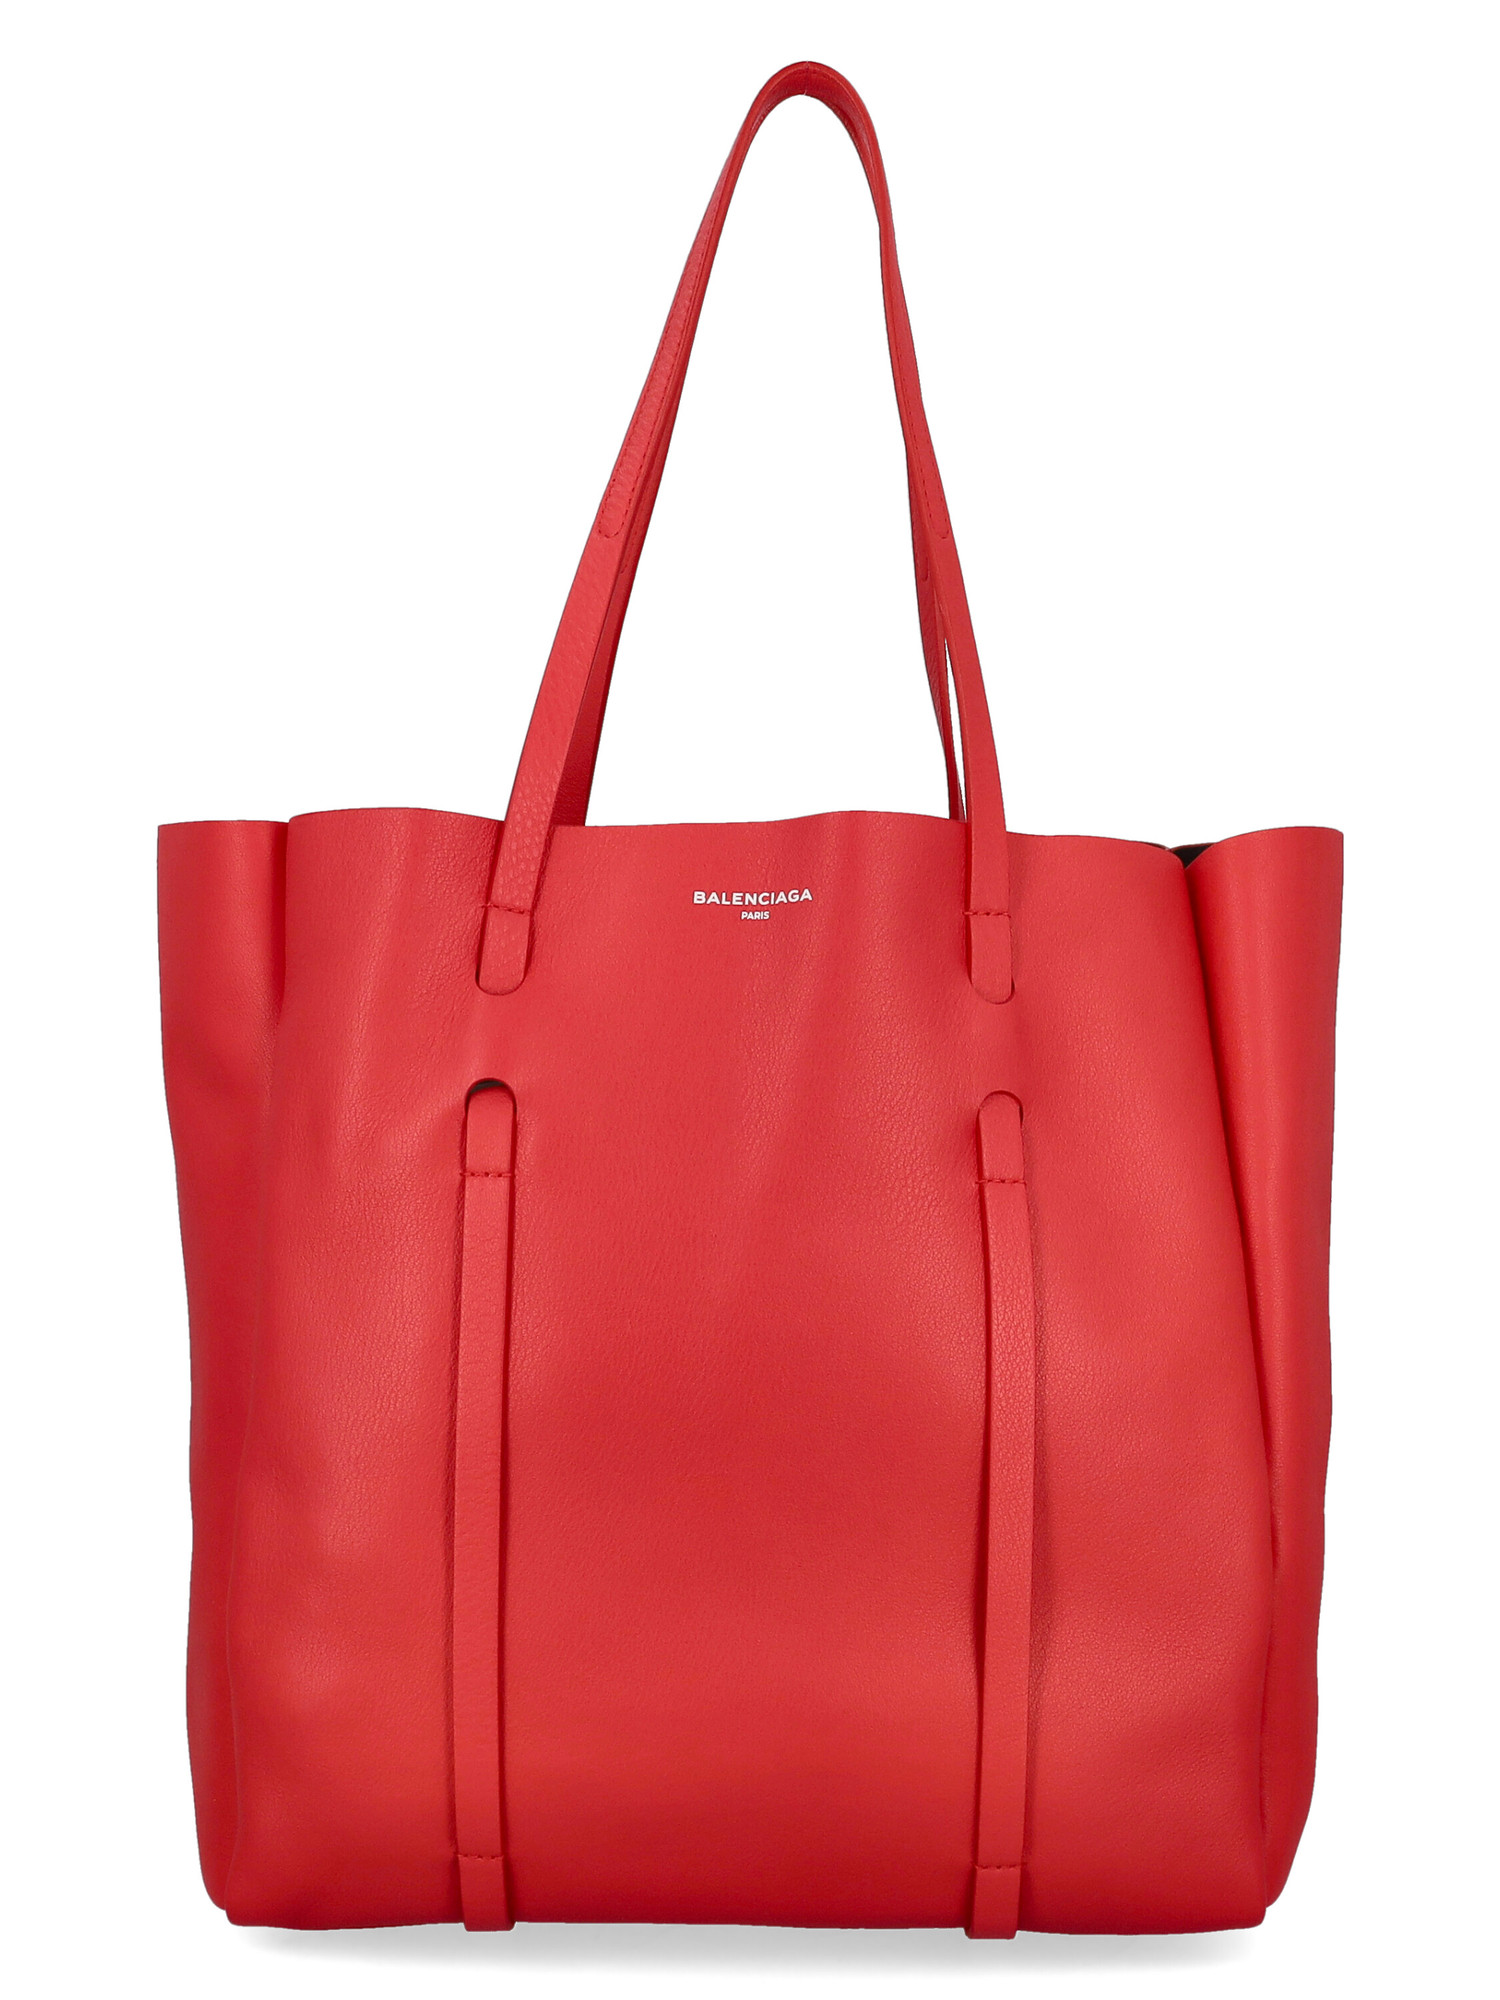 Sacs Porté Épaule Pour Femme - Balenciaga - En Leather Red - Taille:  -